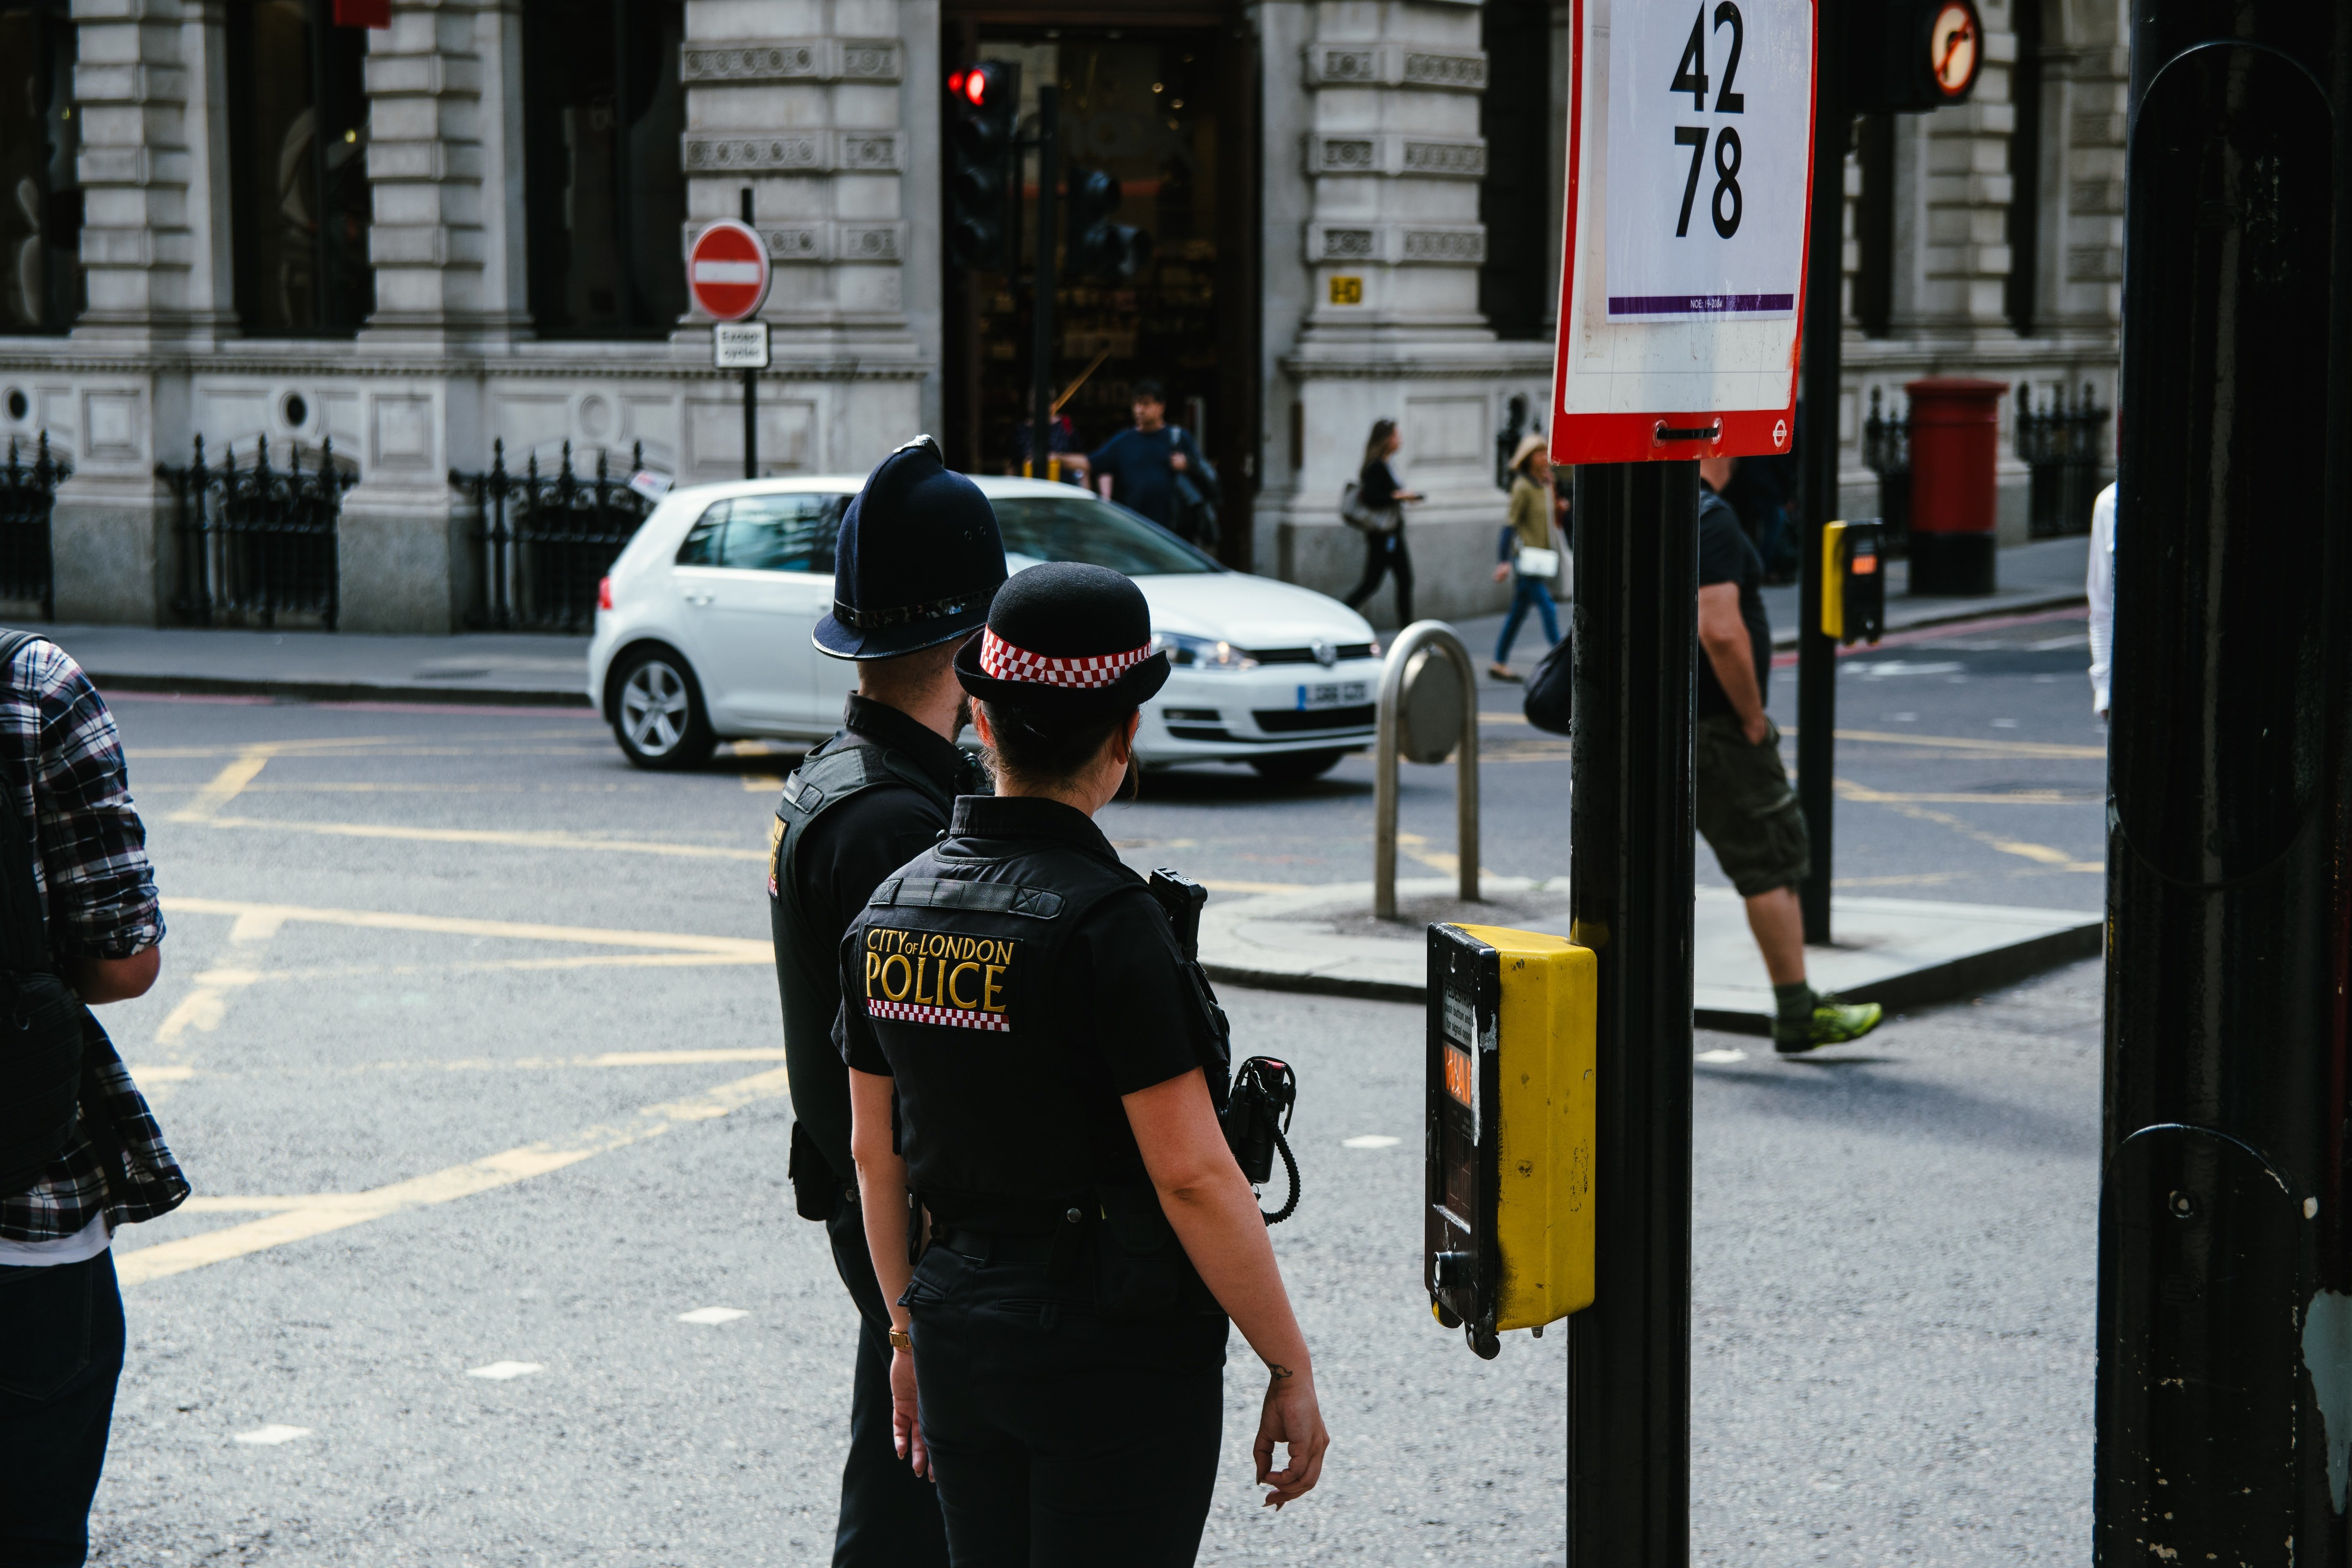 Image de policiers dans la rue | Source : Unsplash